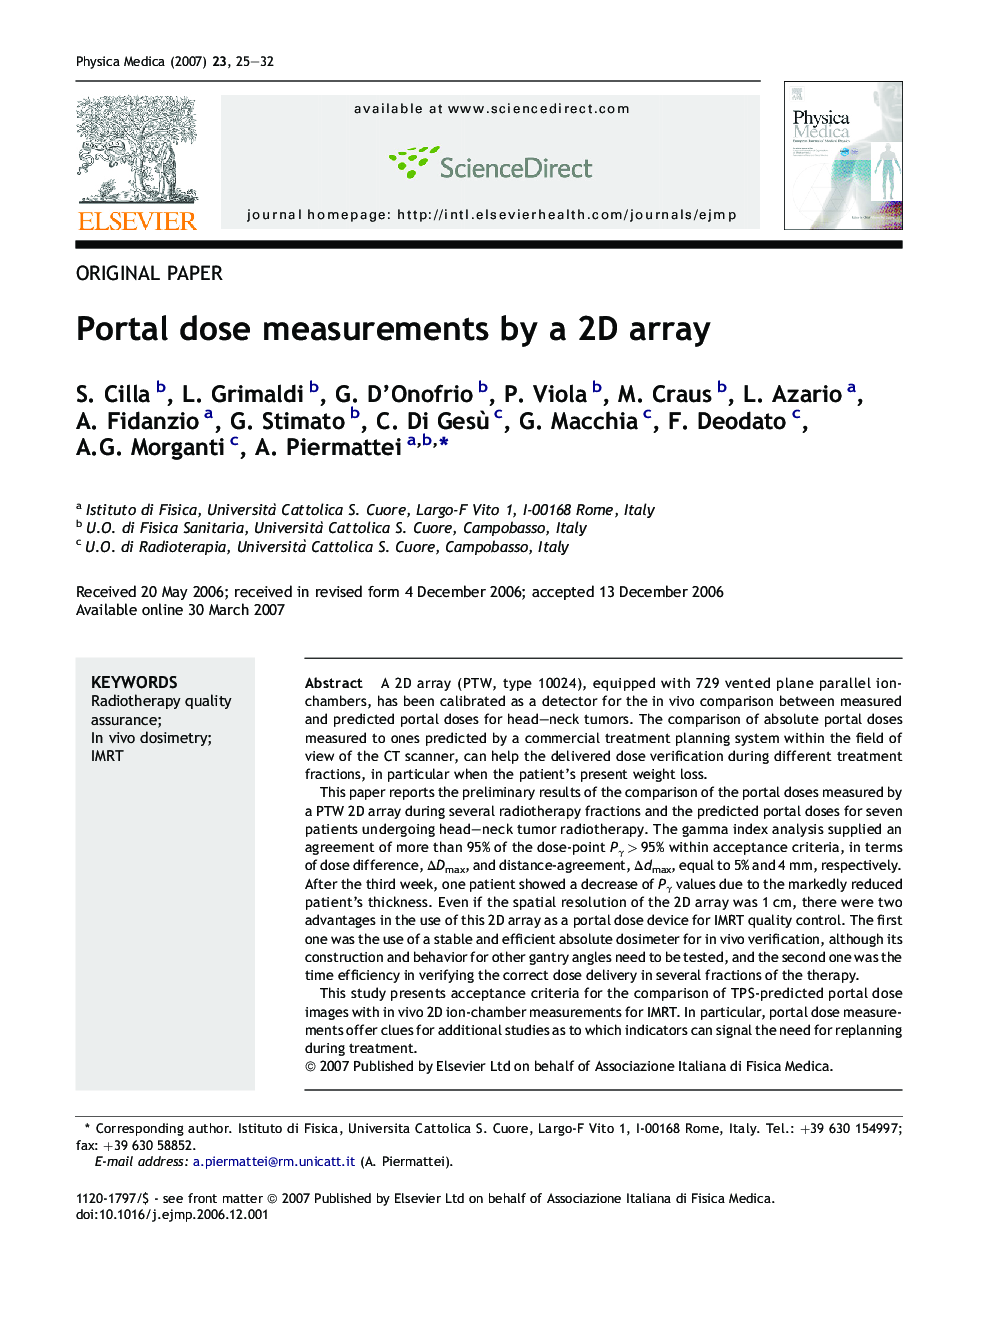 Portal dose measurements by a 2D array